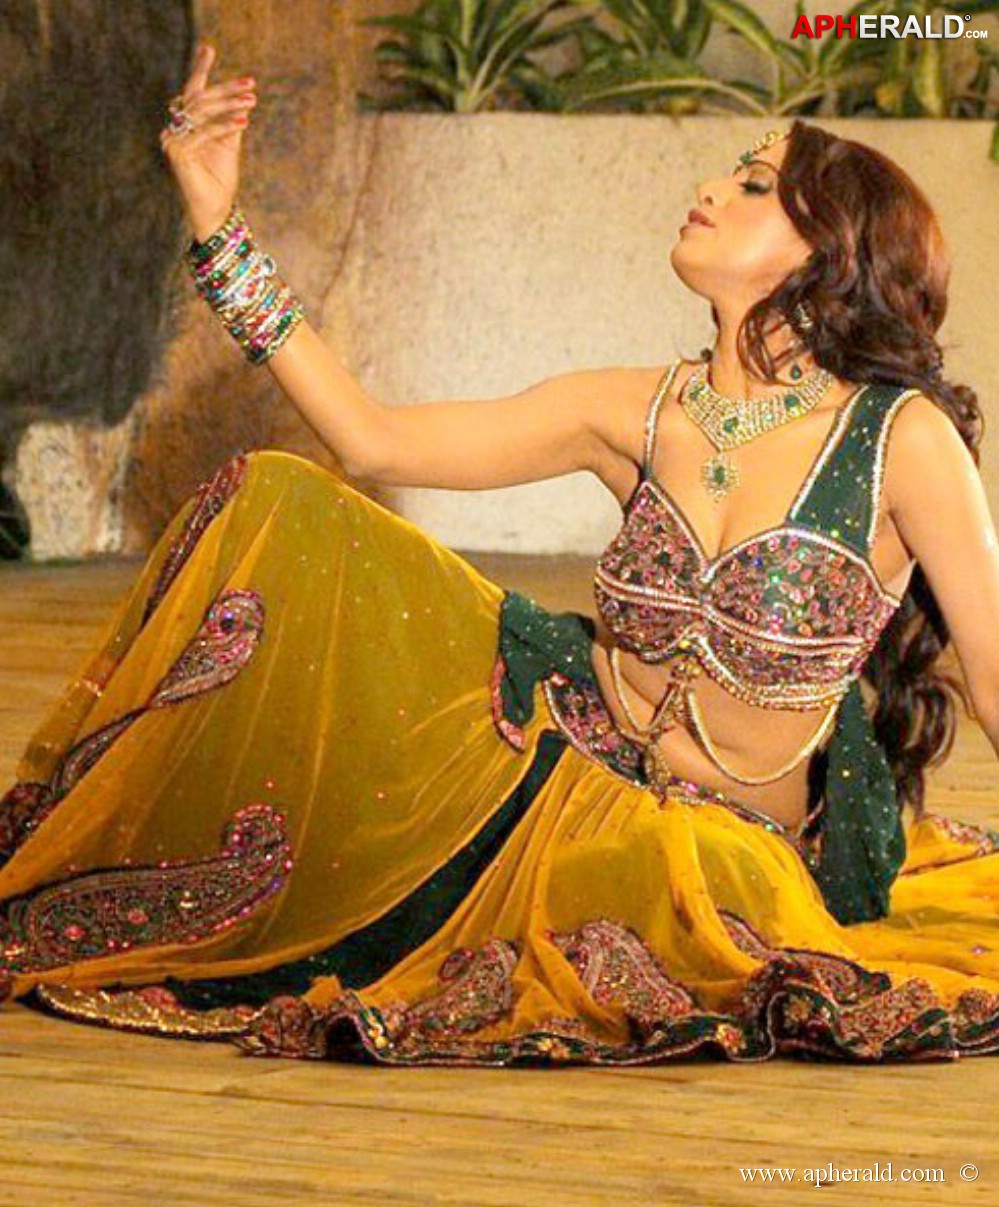 Udaya Bhanu Hot Dance Photos